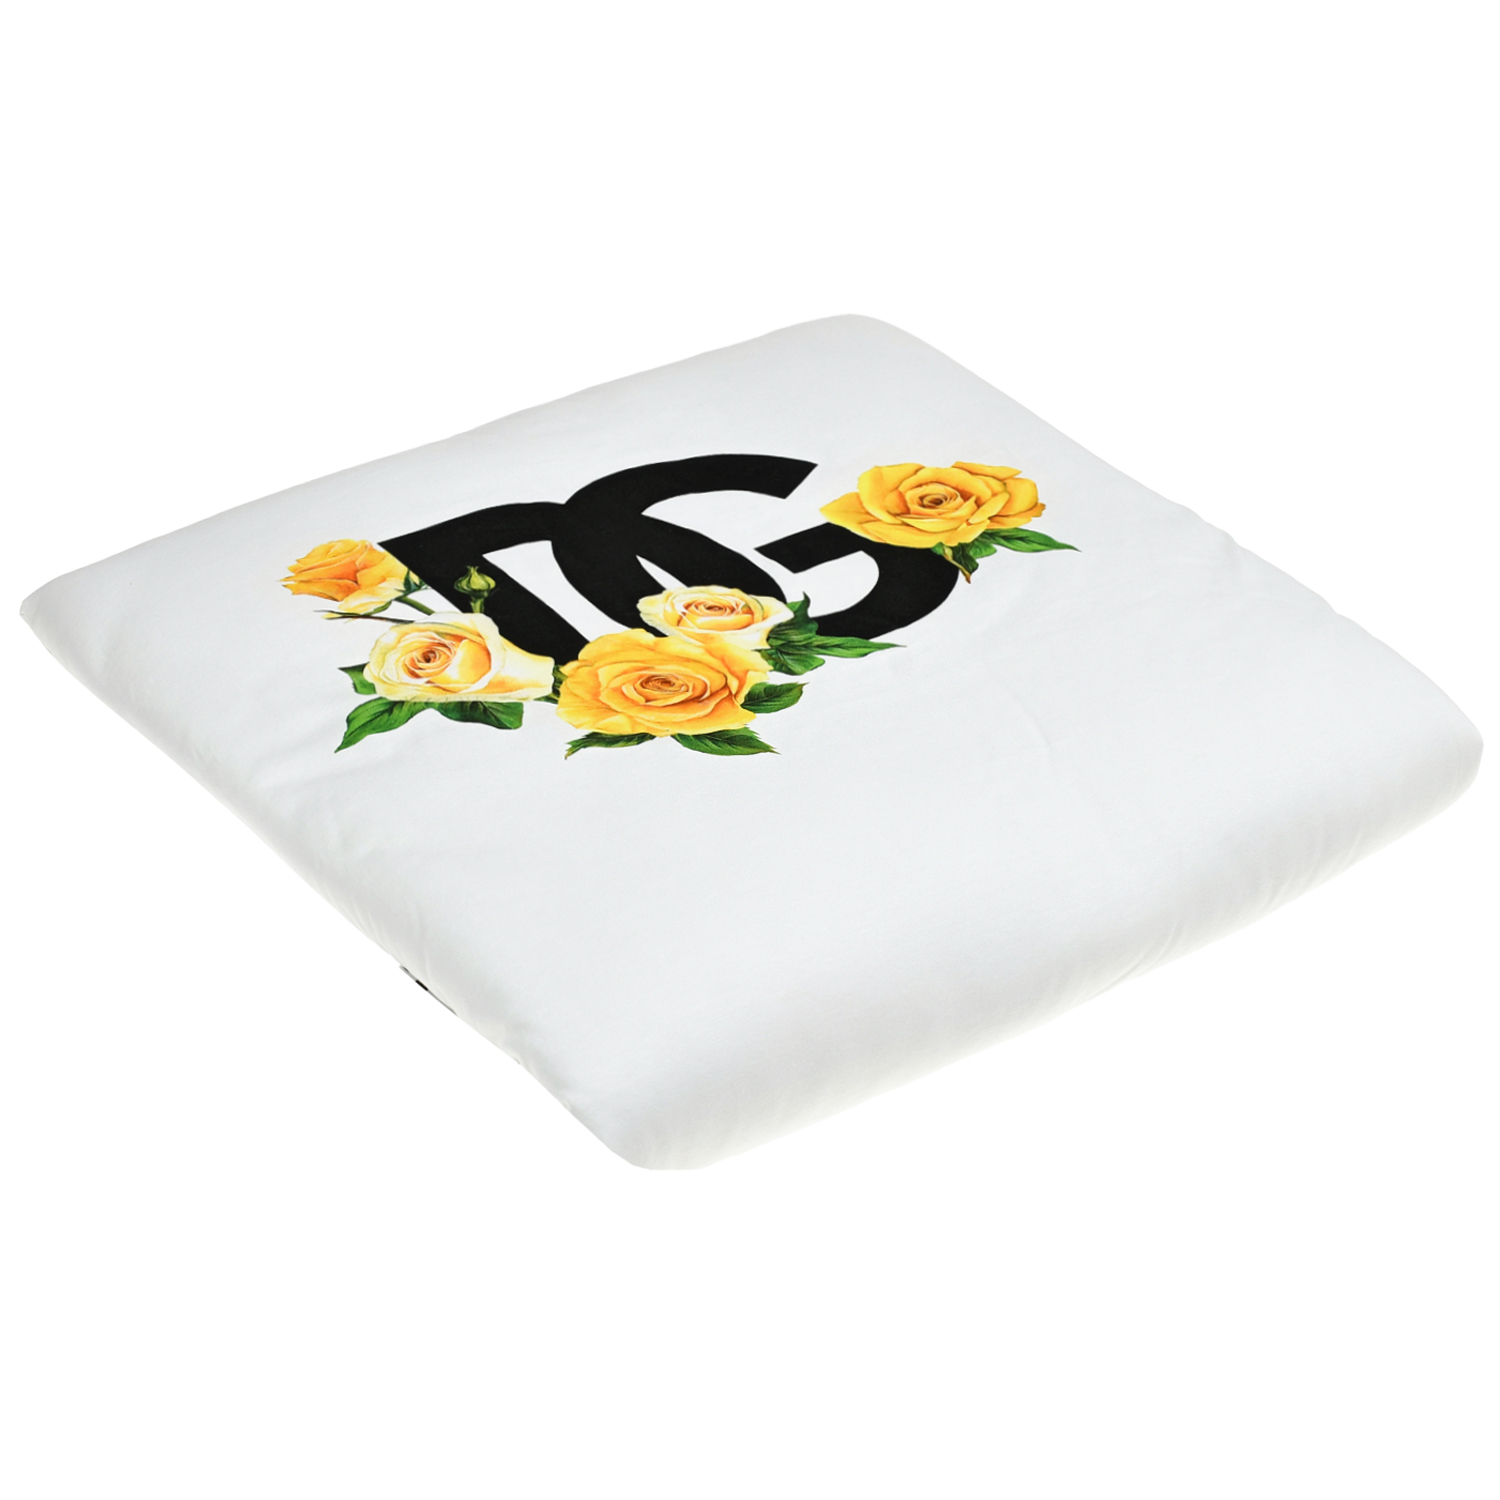 Одеяло с принтом "желтые розы" и лого Dolce&Gabbana, размер unica, цвет белый - фото 1